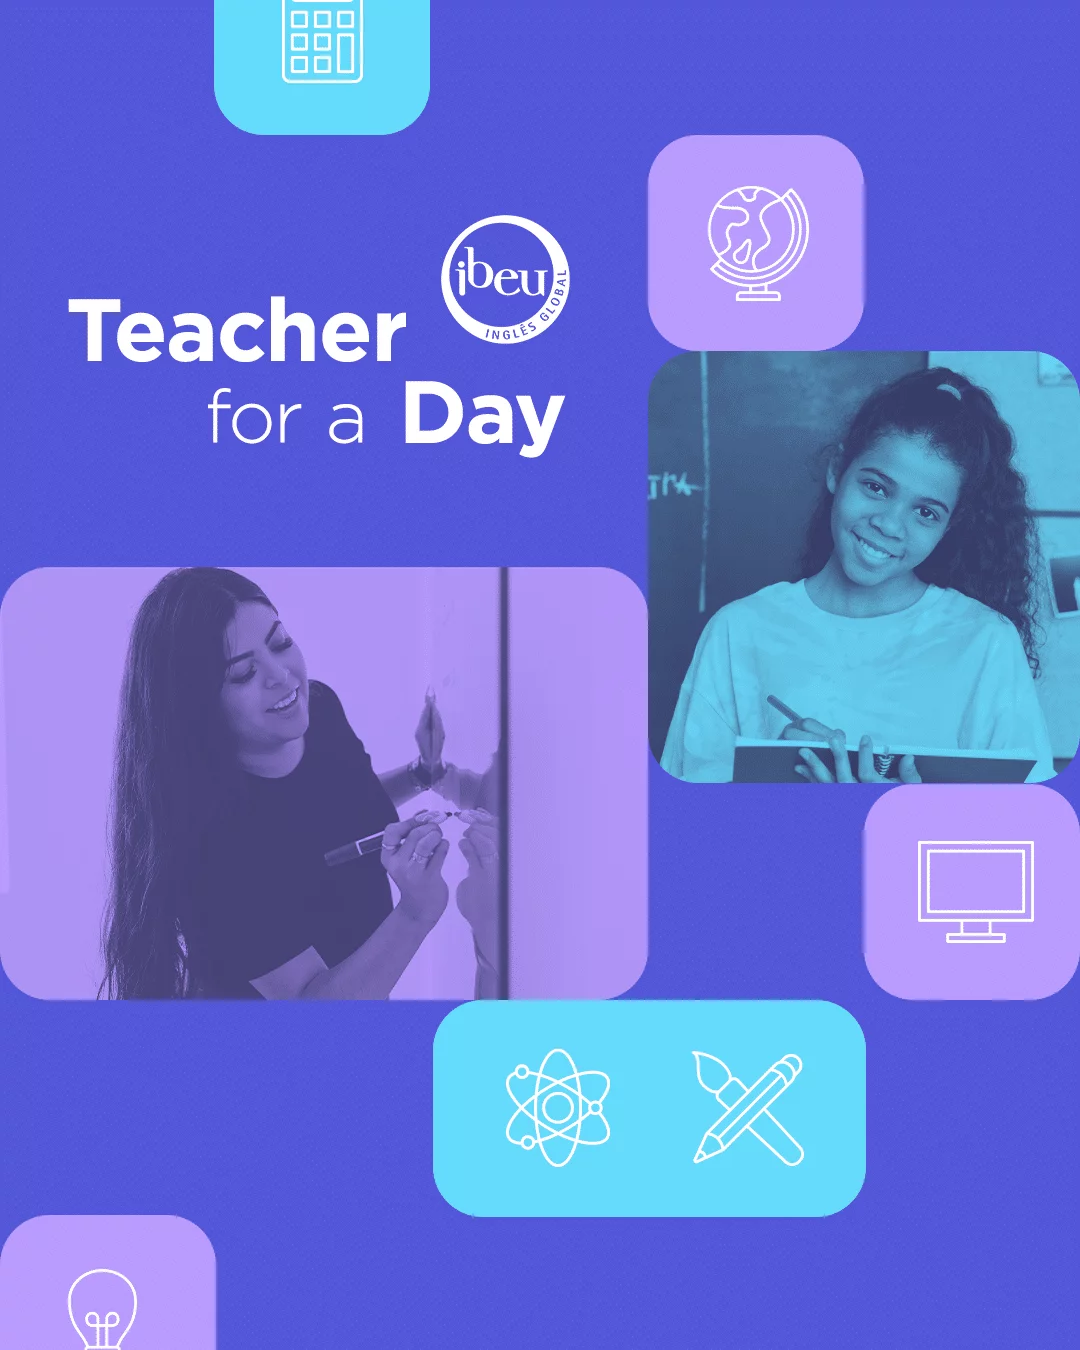 ibeu_teacher for a day (1)